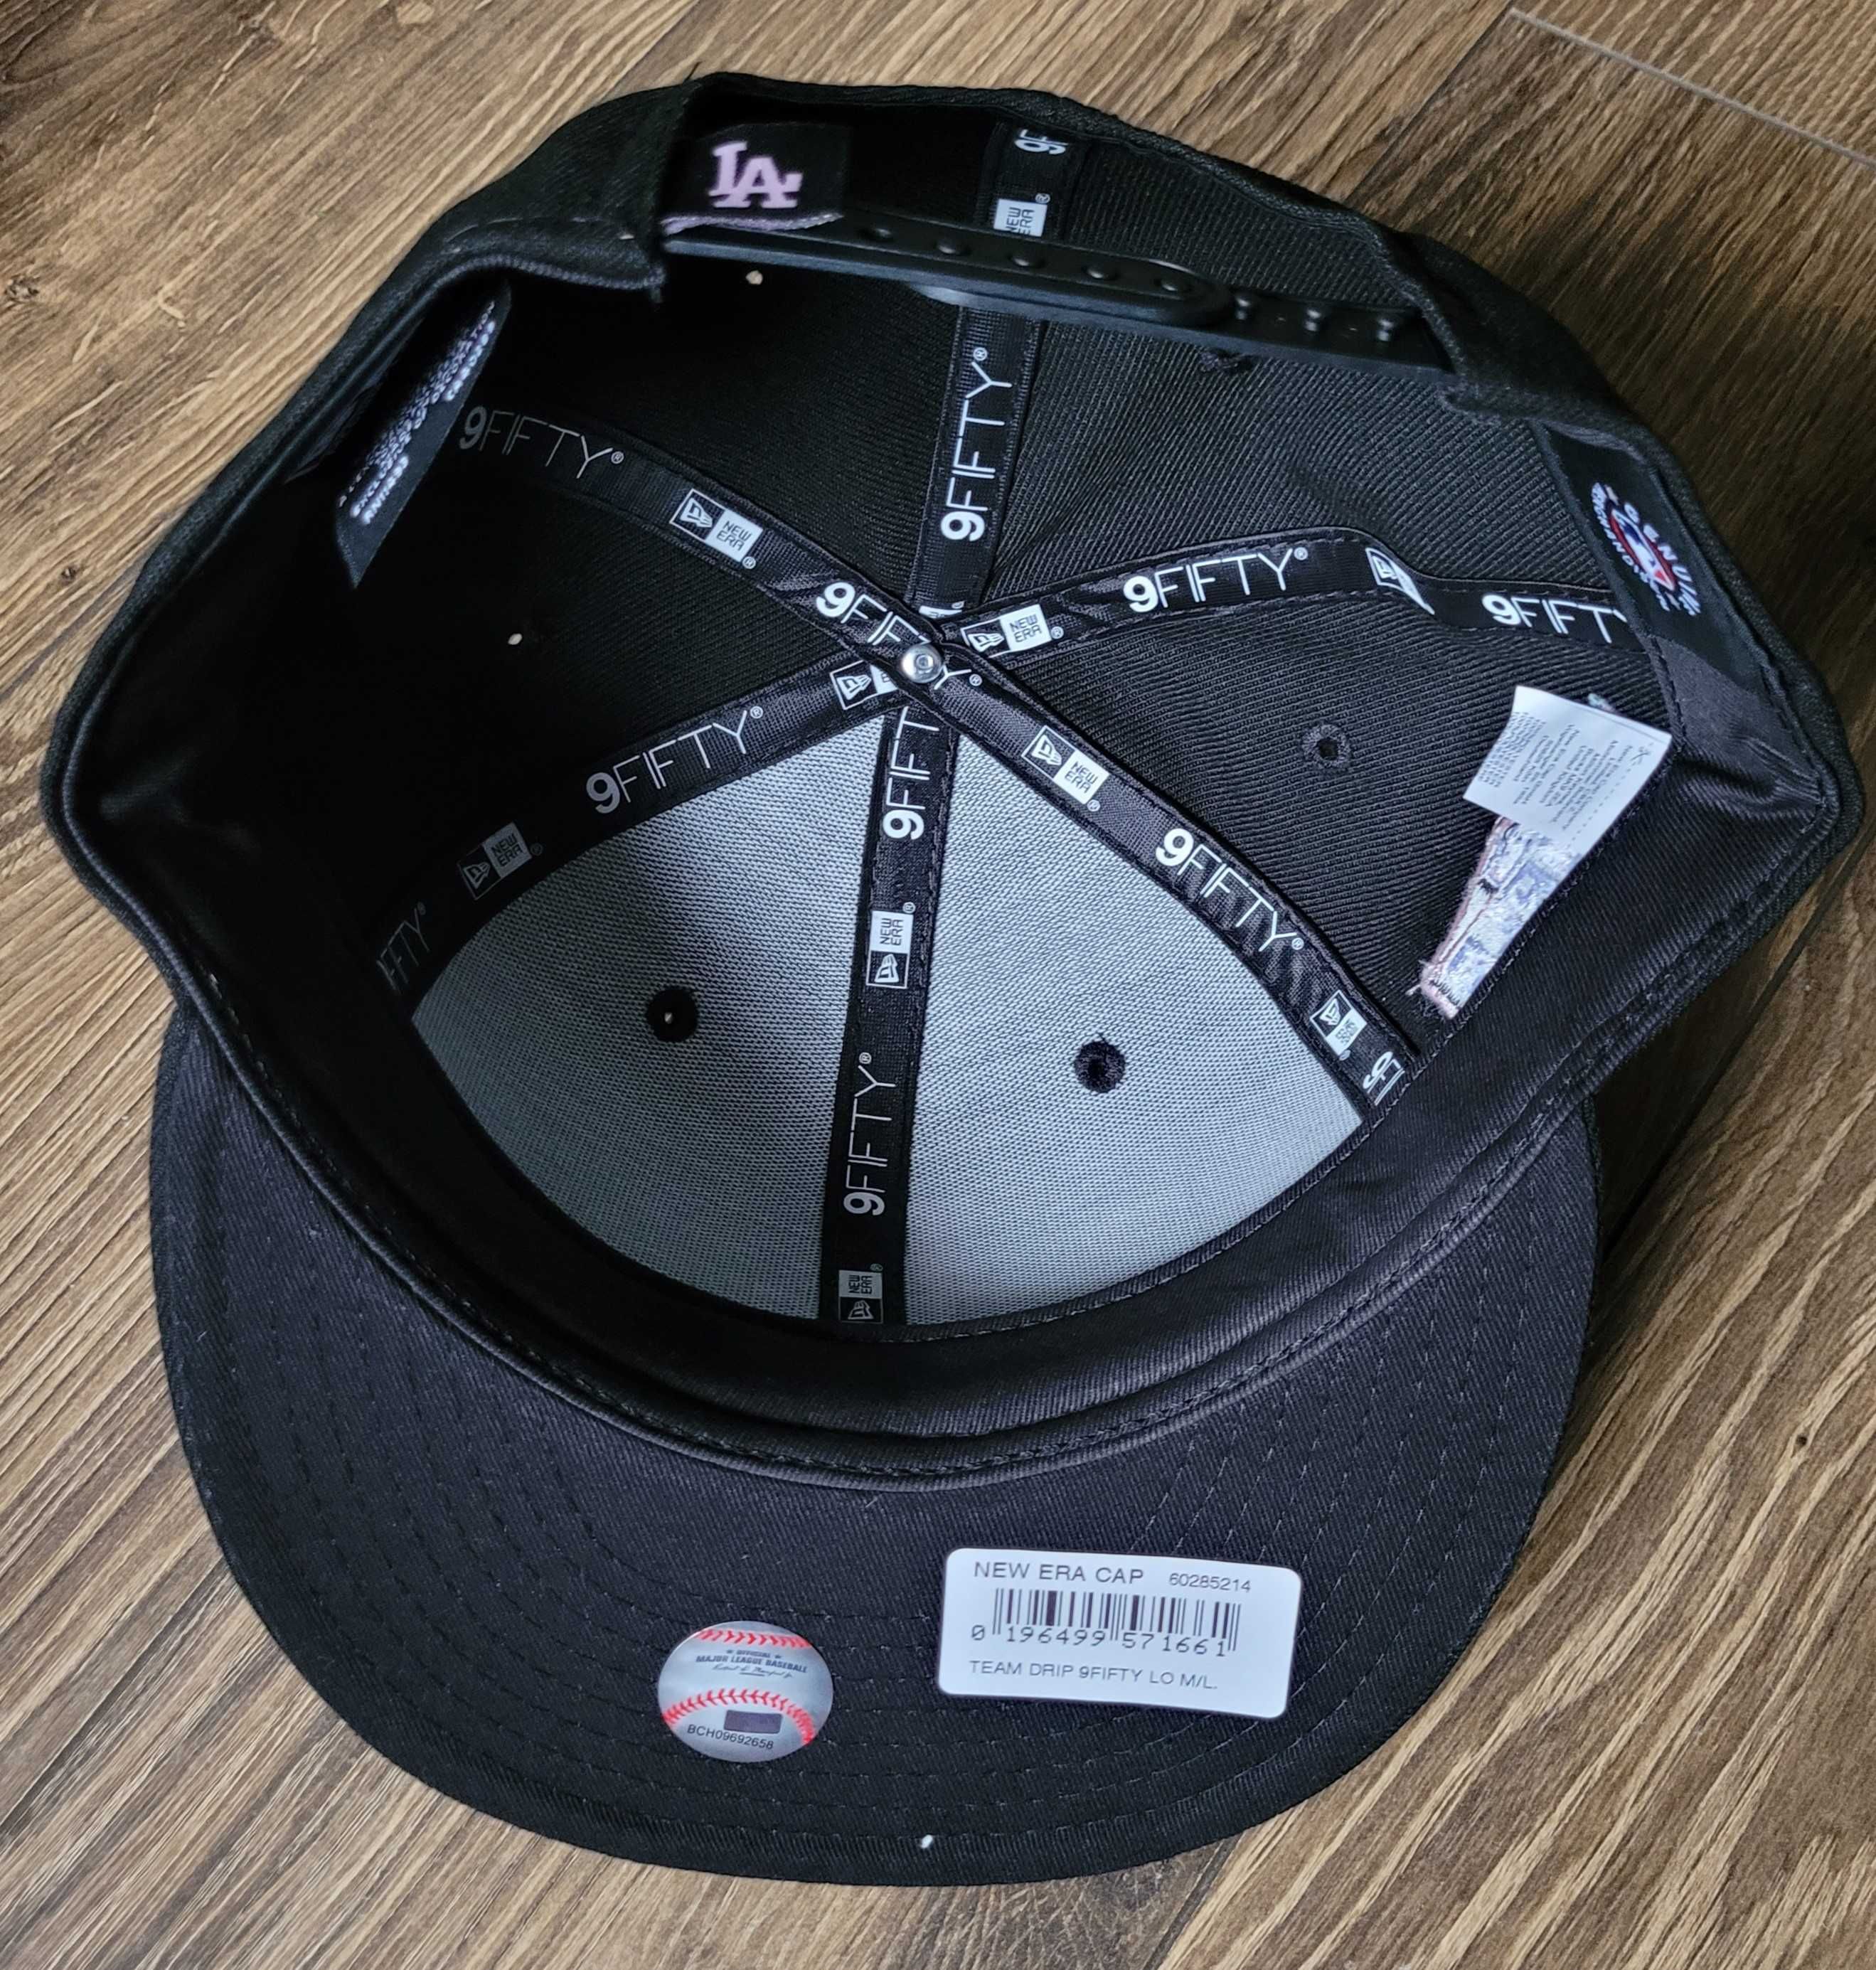 czapka z daszkiem New Era 9Fifty LA Lakers M/L z logo regulowana NOWA